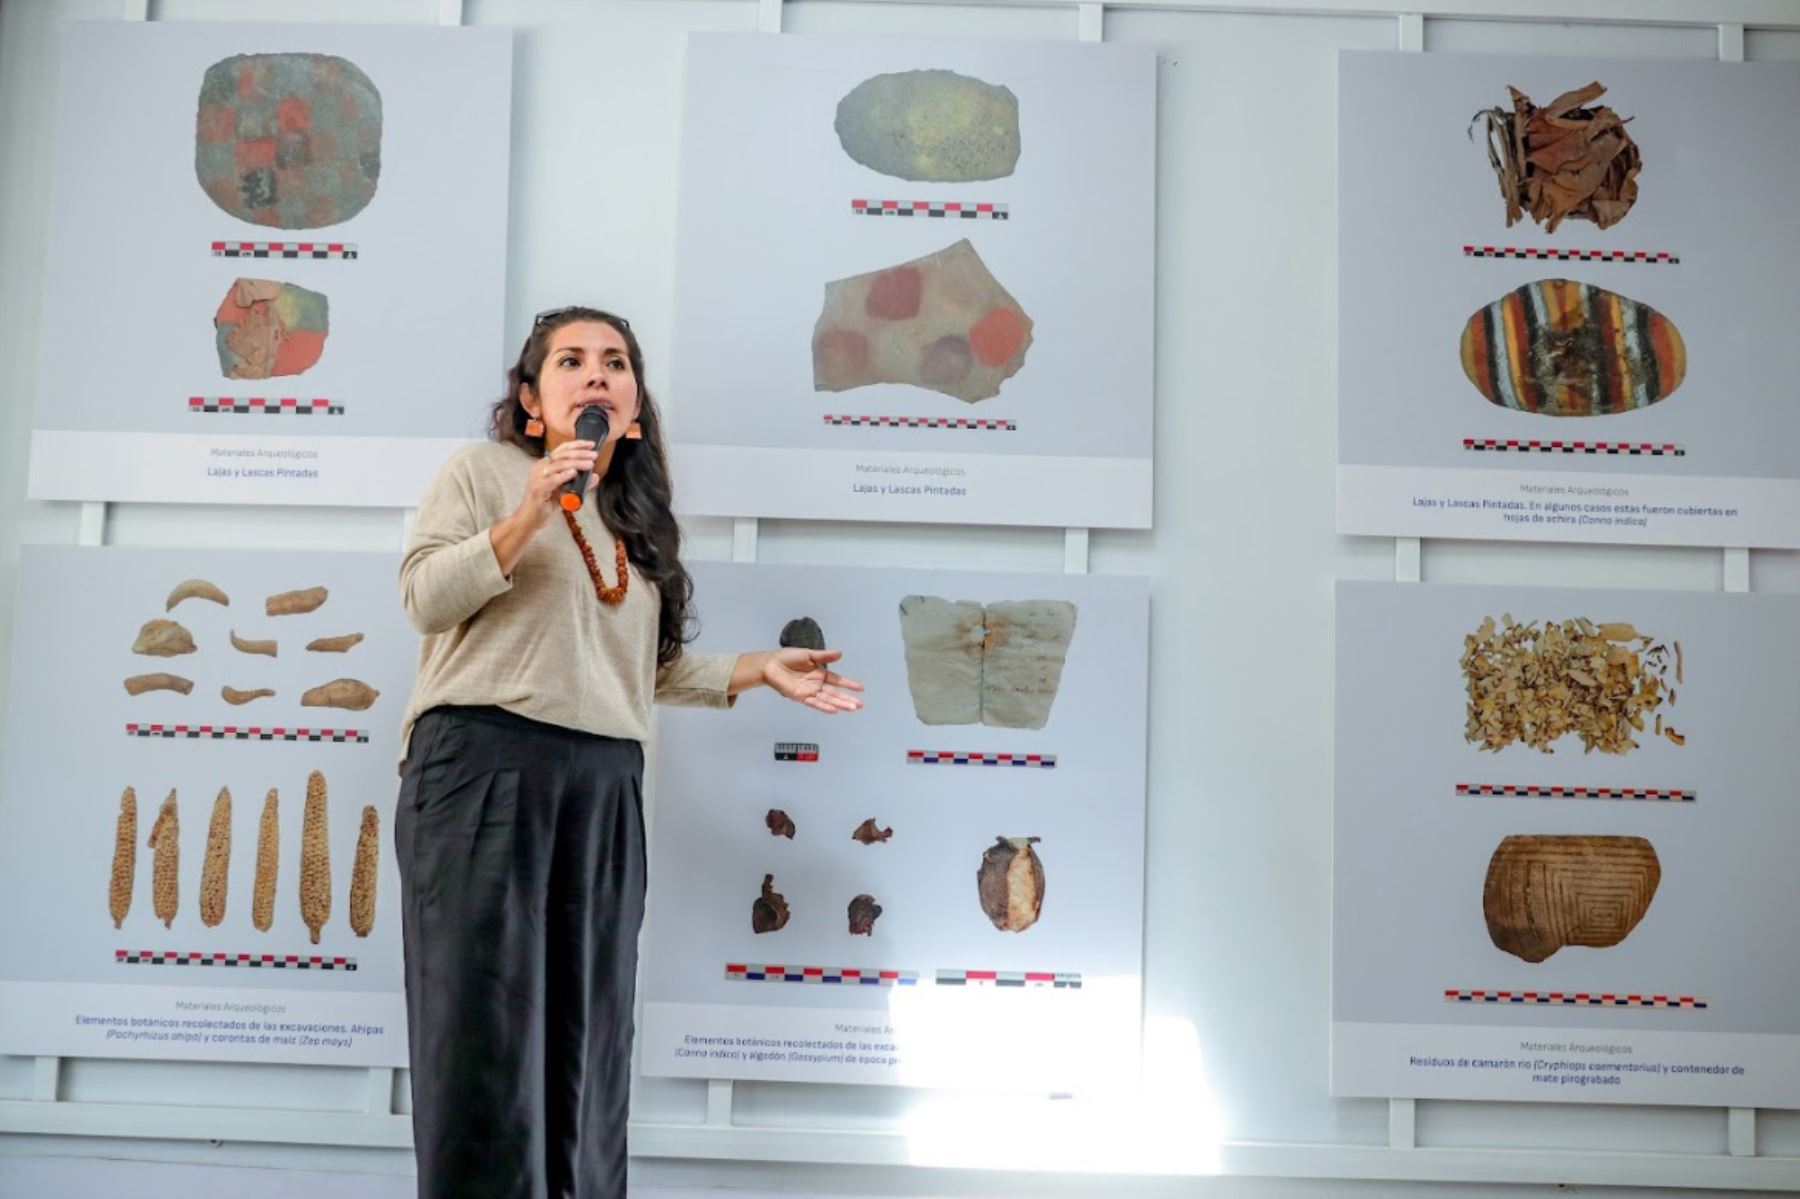 La arqueóloga Liz Gonzales Ruiz, de la Universidad Católica San Pablo de Arequipa, lidera el Proyecto Arqueológico Toro Muerto. Foto: ANDINA/Difusión